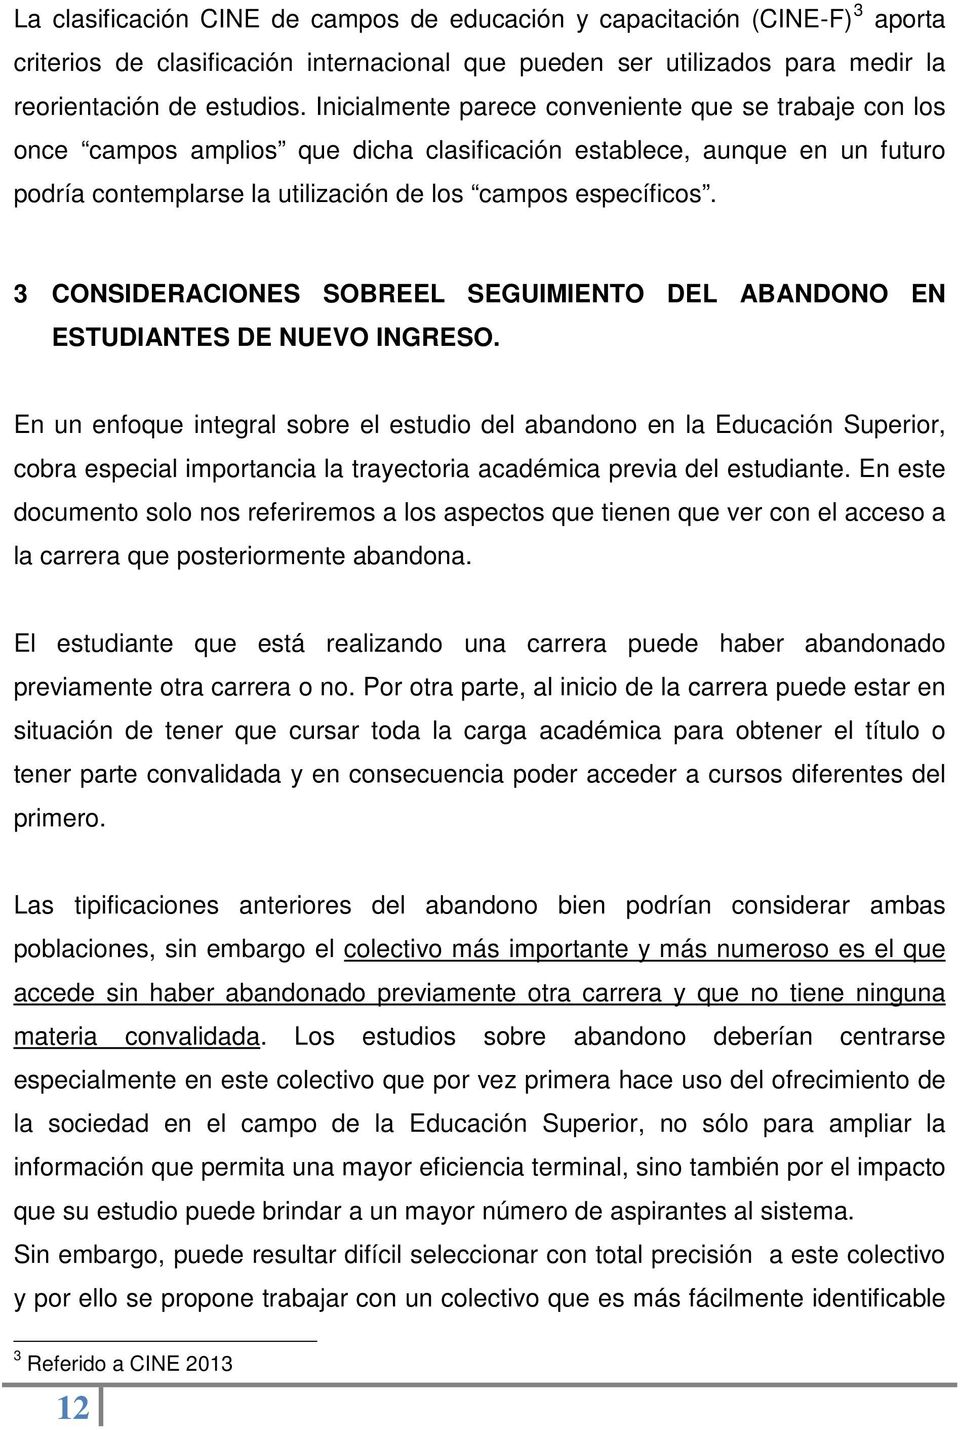 3 CONSIDERACIONES SOBREEL SEGUIMIENTO DEL ABANDONO EN ESTUDIANTES DE NUEVO INGRESO.